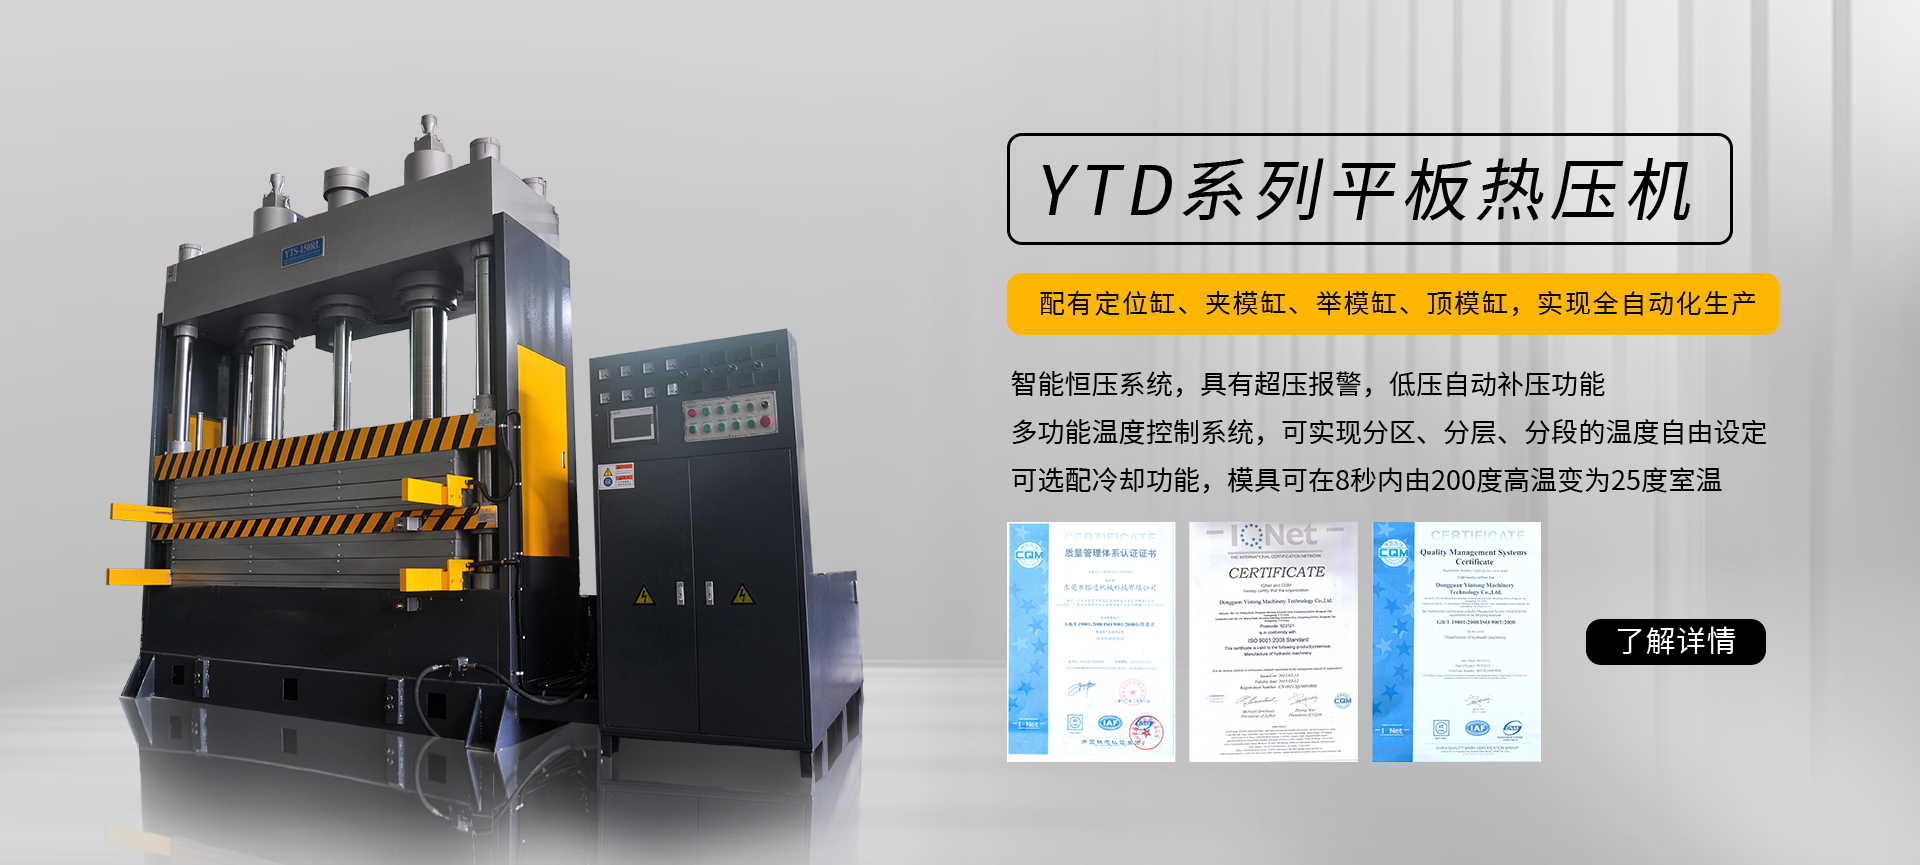 YT-RS系列热压成型机